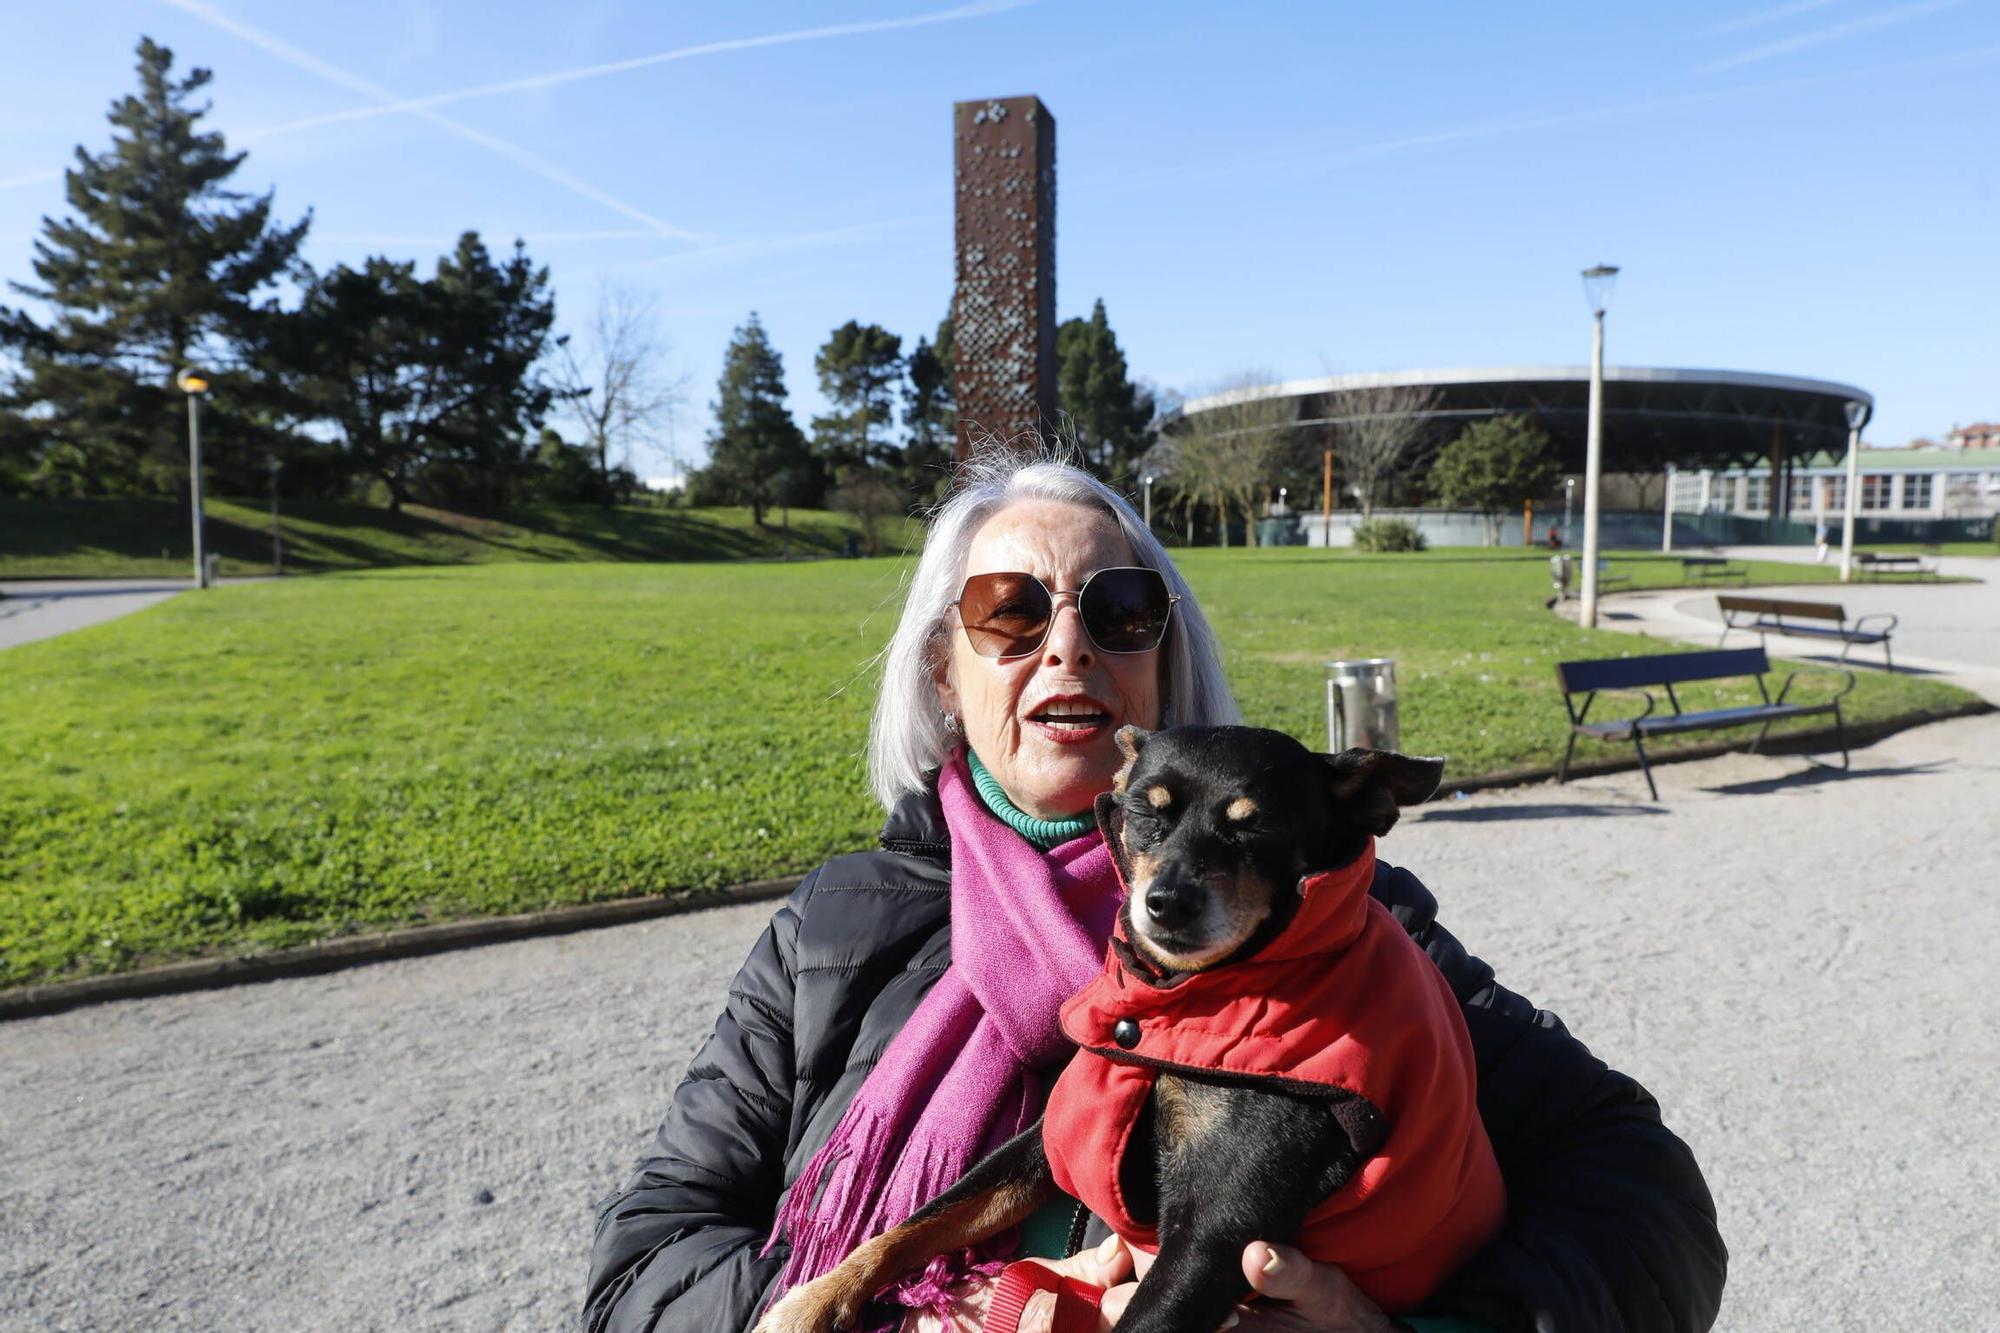 Alerta en Gijón por la oruga que "puede ser mortal para los perros" (en imágenes)